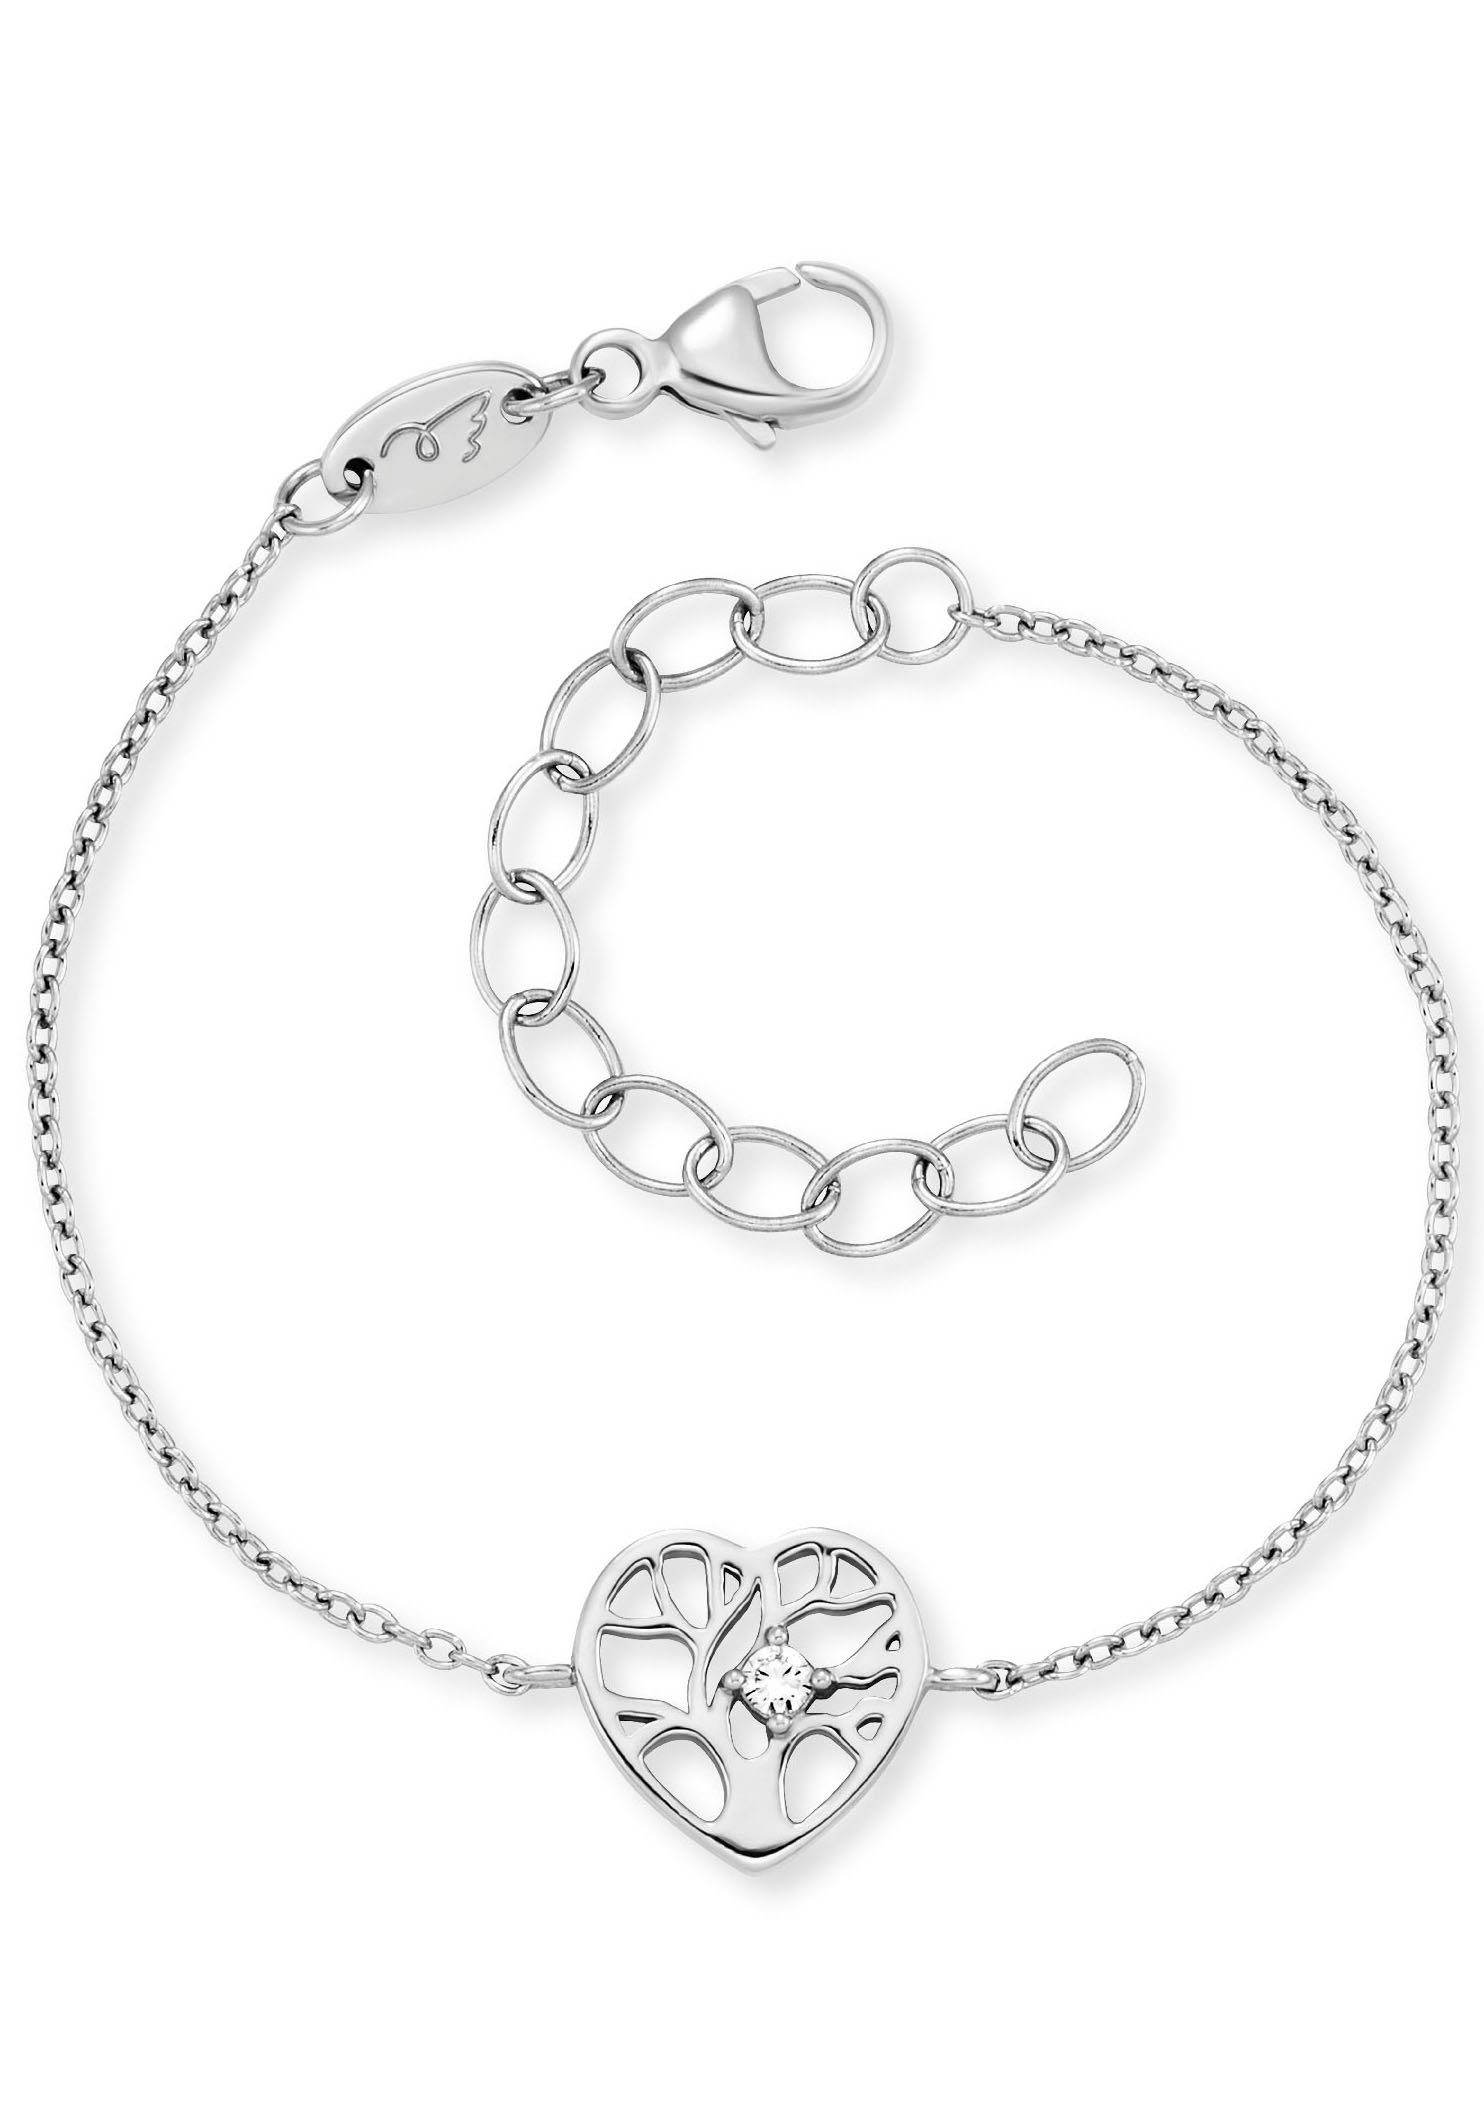 Favoritensuche Herzengel Armband Schmuck Geschenk, Zirkonia Lebensbaum HEB-TREE-ZI, (synth) im Armkette, mit Herz